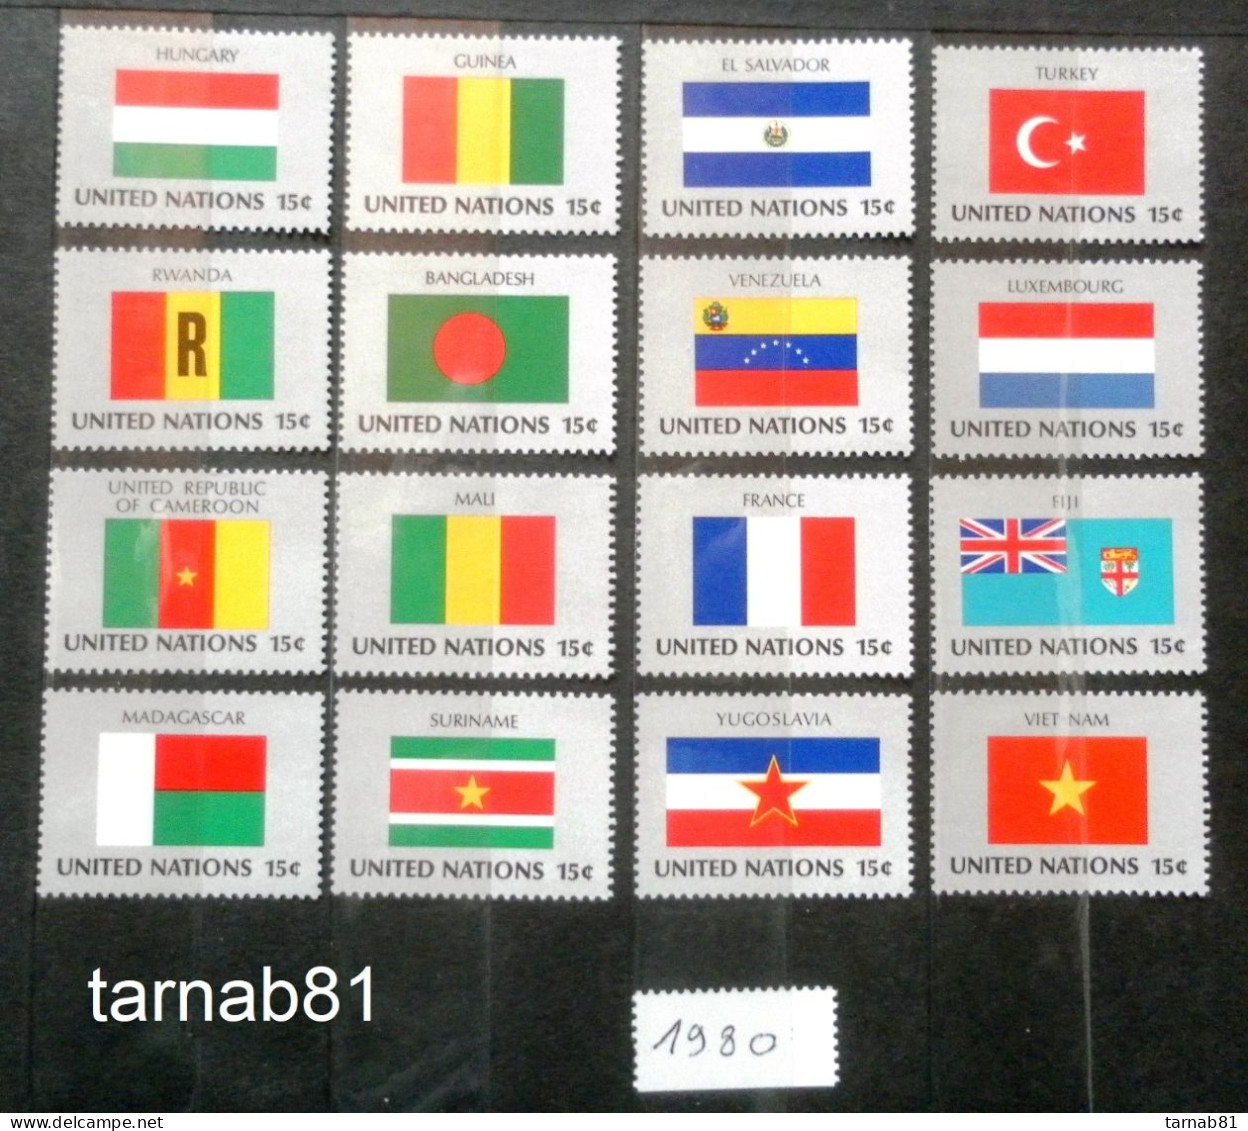 Flaggen Flag Drapeau 1980 1981 1982 1983 1984 1985 1986 1987 1988 1989 1997 1998 1999 2001 2007 2013 2014 2017 2018 2020 - Postzegels